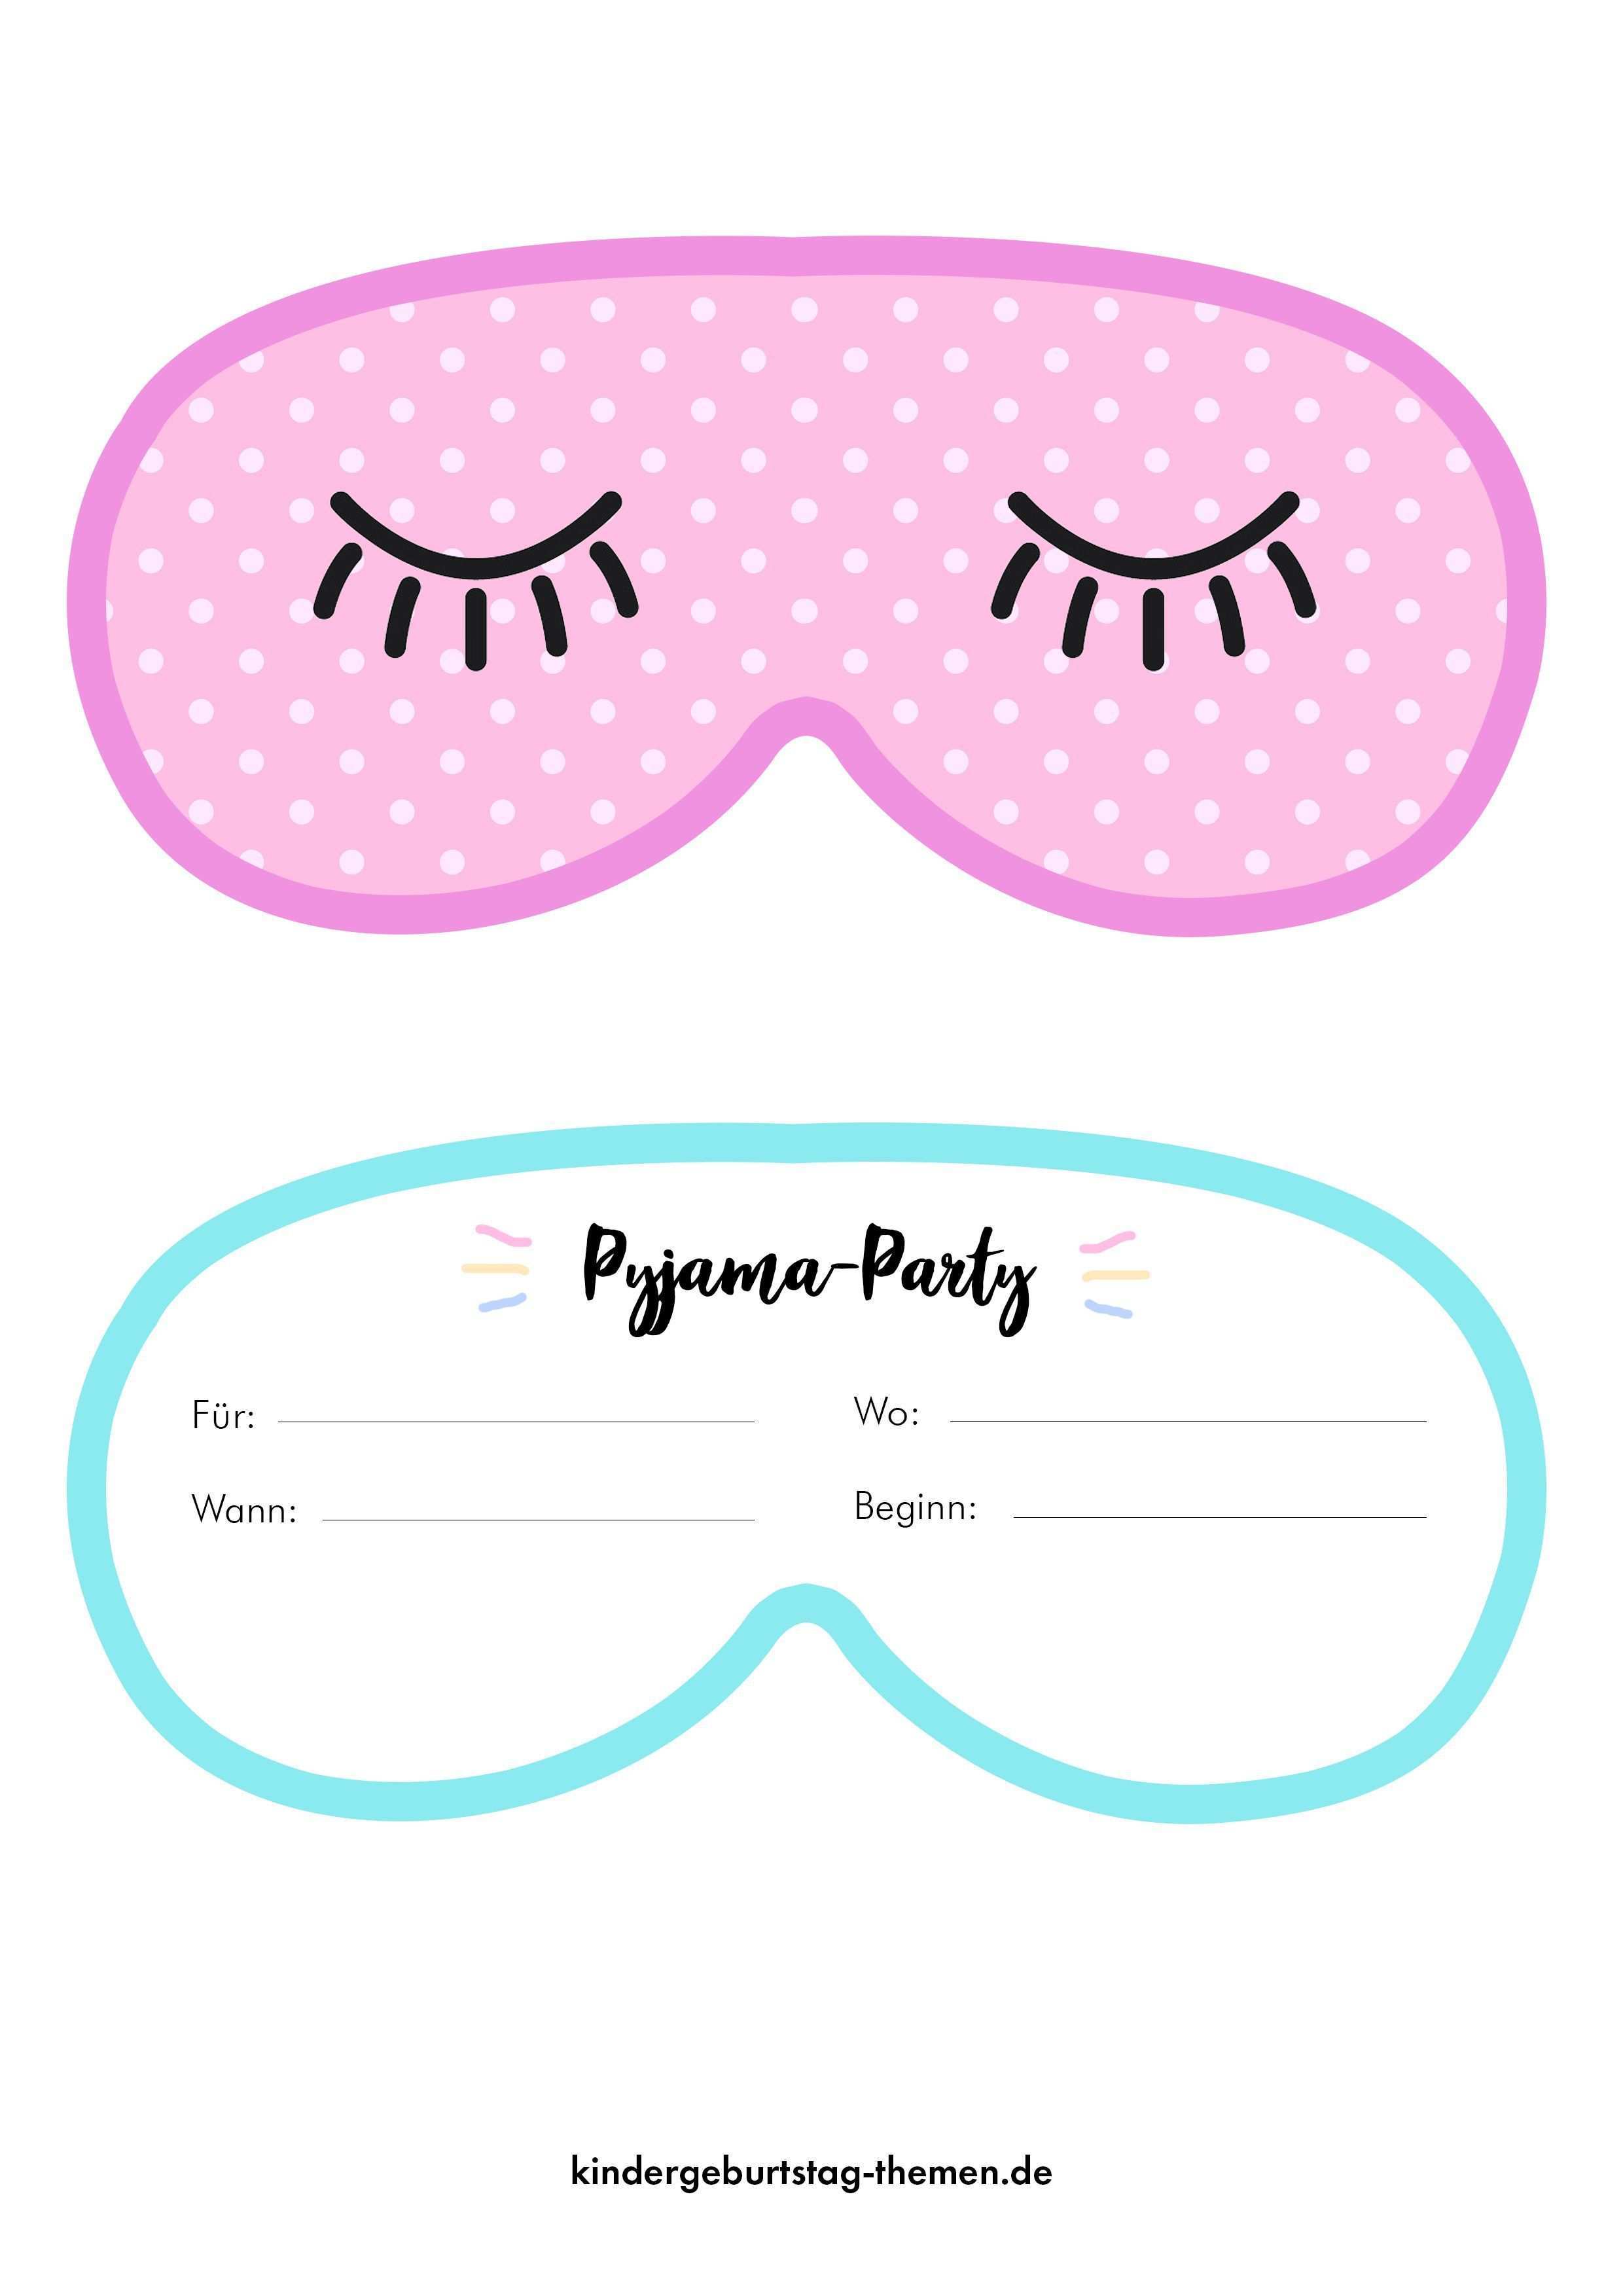 Pyjama Party Einladung Kreative Einladungskarten In Pdf Druckvorlagen Und Jpg Pajama Party Slumber Party Invitations Pajama Birthday Parties